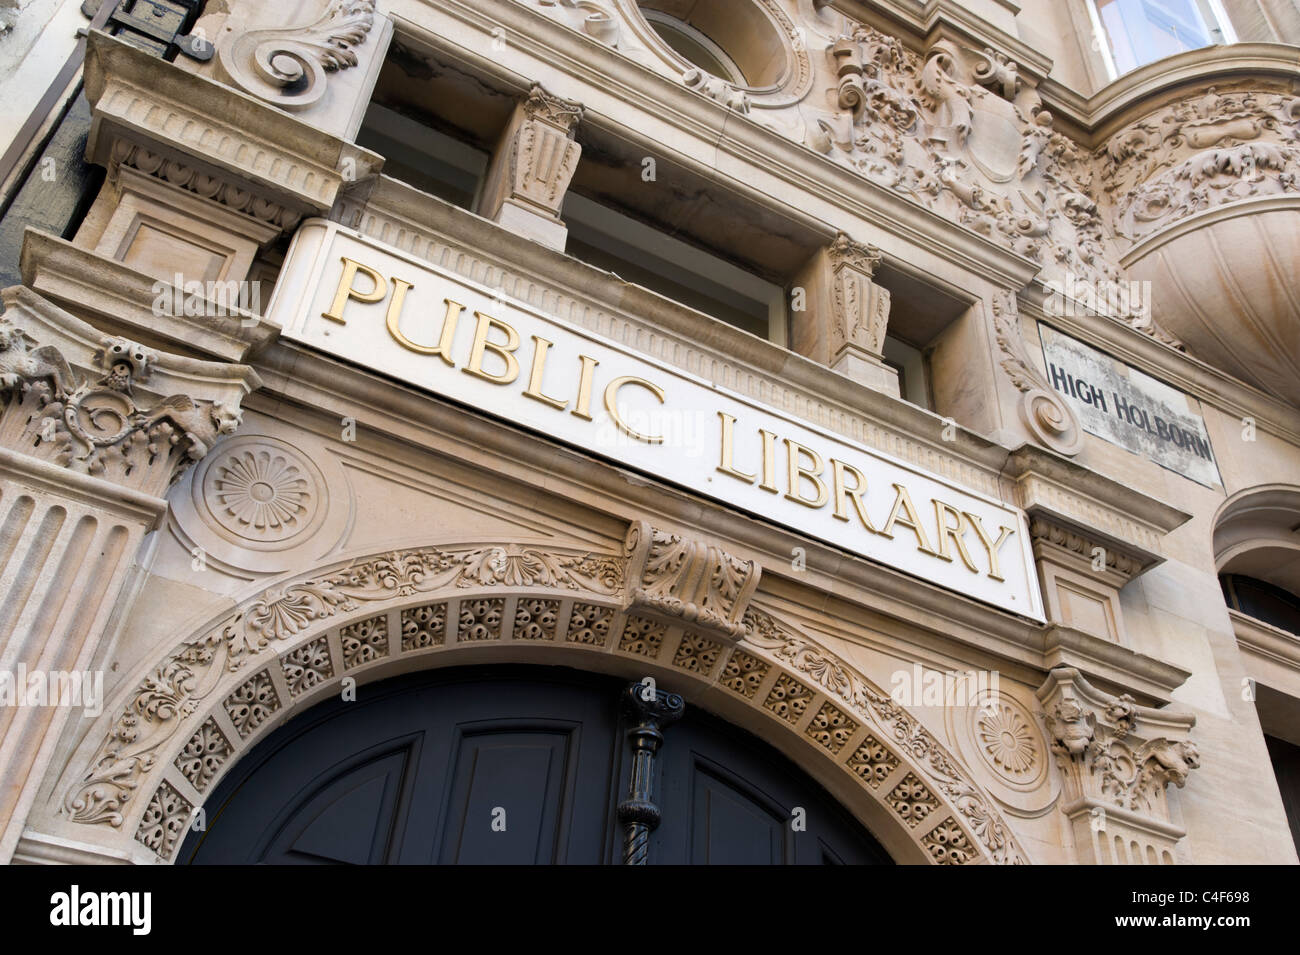 Bibliothèque publique sur High Holborn, London, UK Banque D'Images